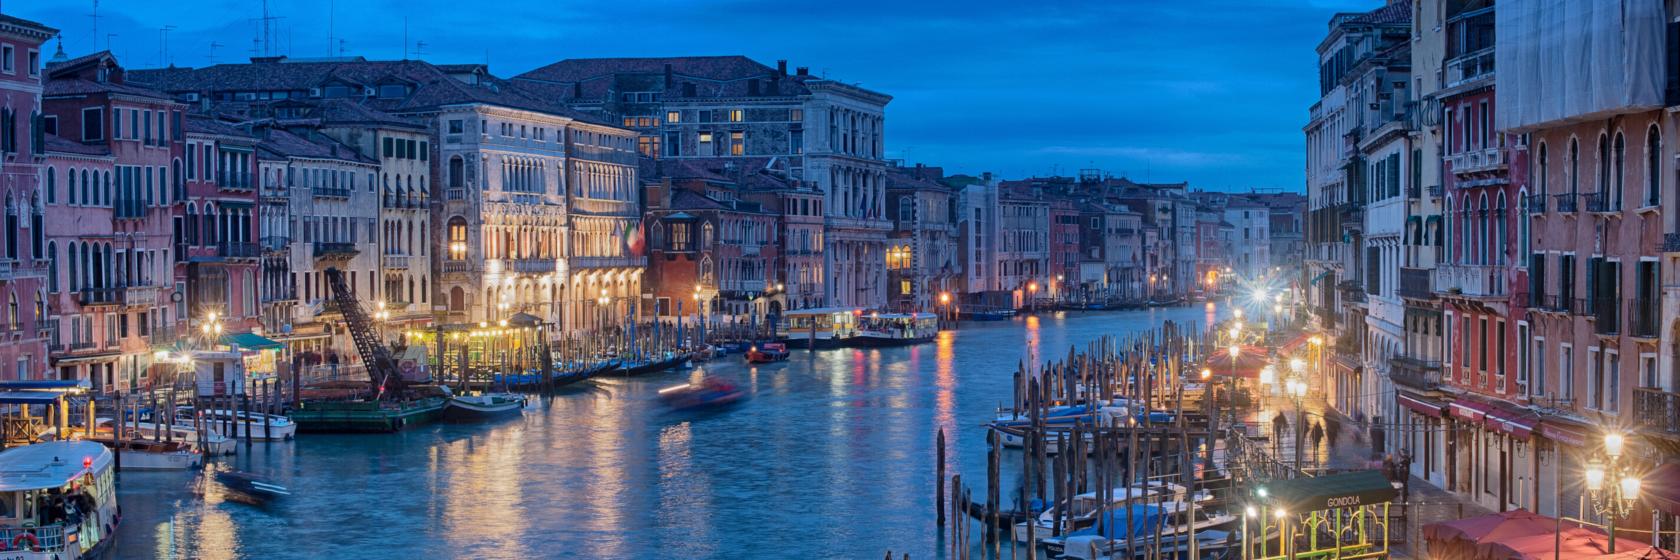 Venice, Italy Hotels